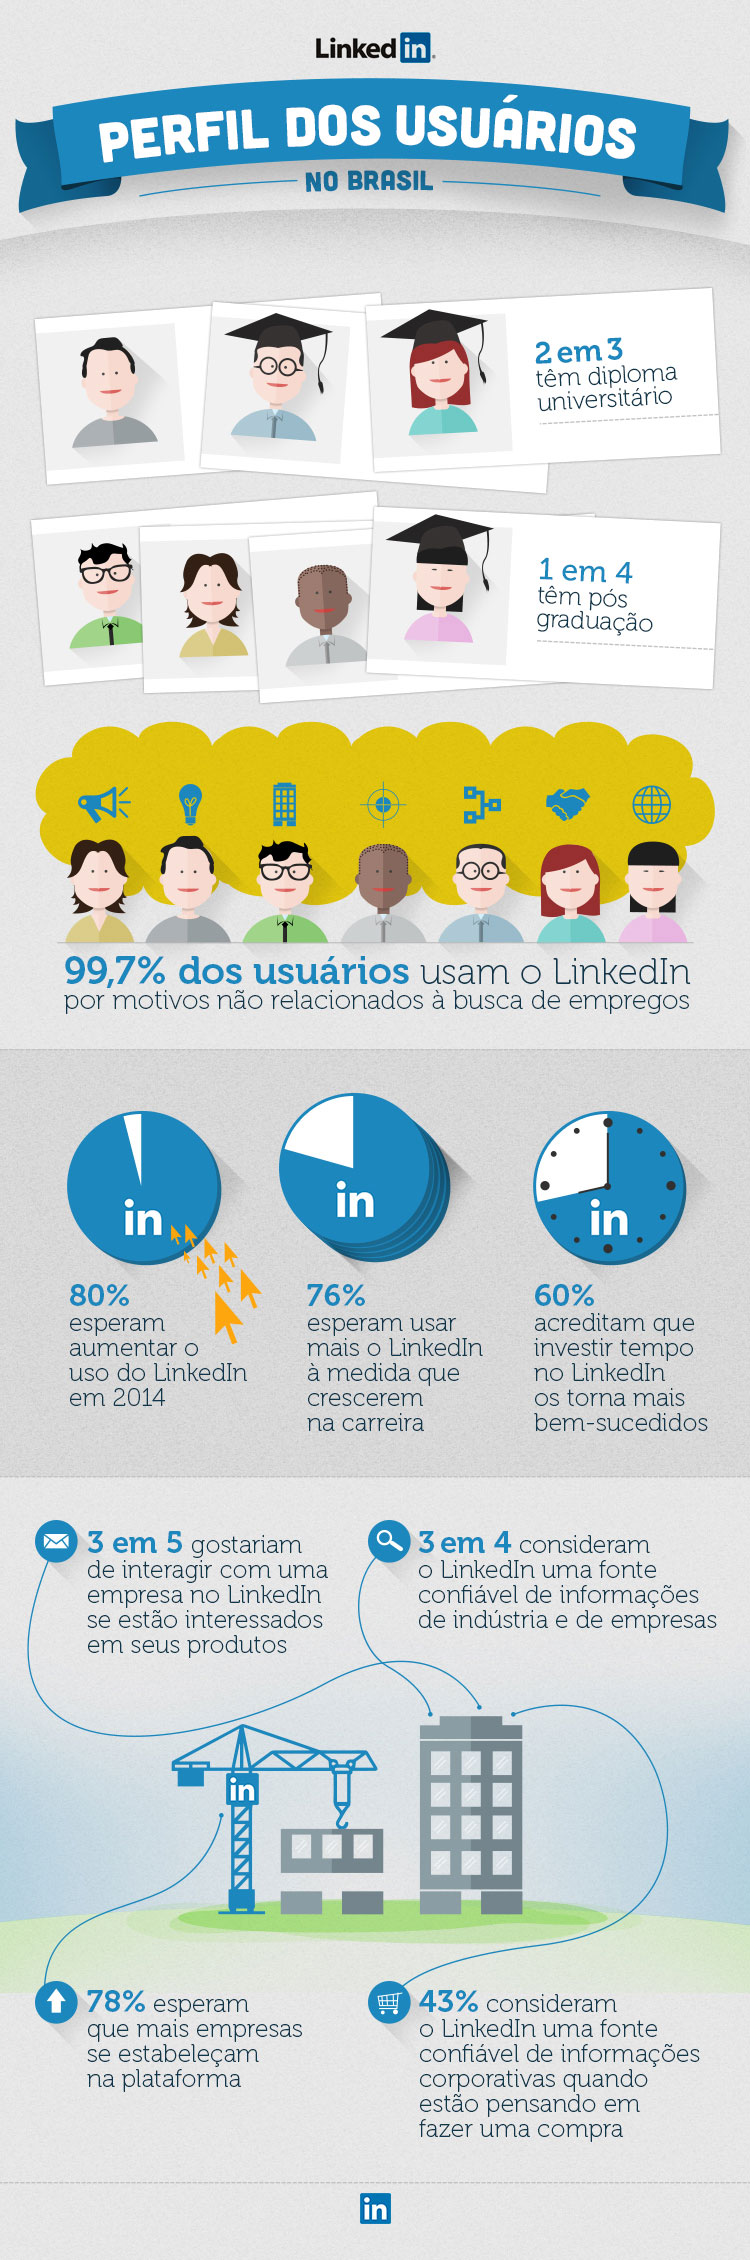 Infográfico mostrando o perfil do usuário do LinkedIn no Brasil.